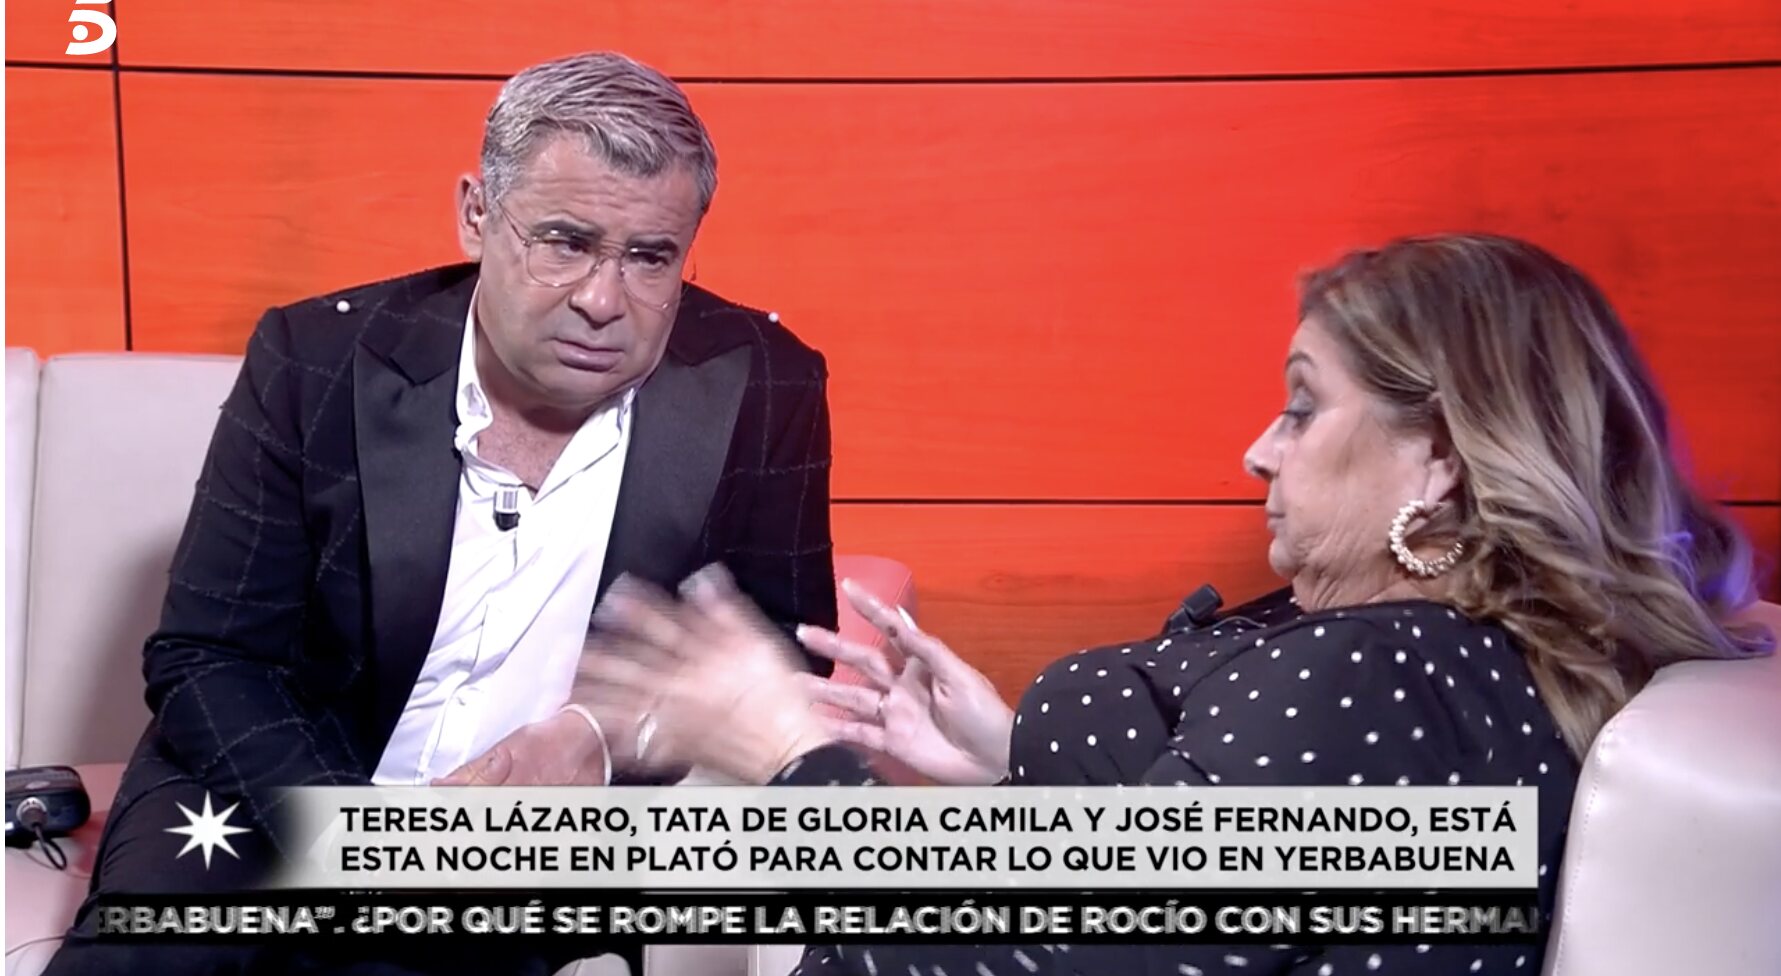 Teresa Lázaro está dispuesta a contarlo todo en el juzgado | Foto: Telecinco.es